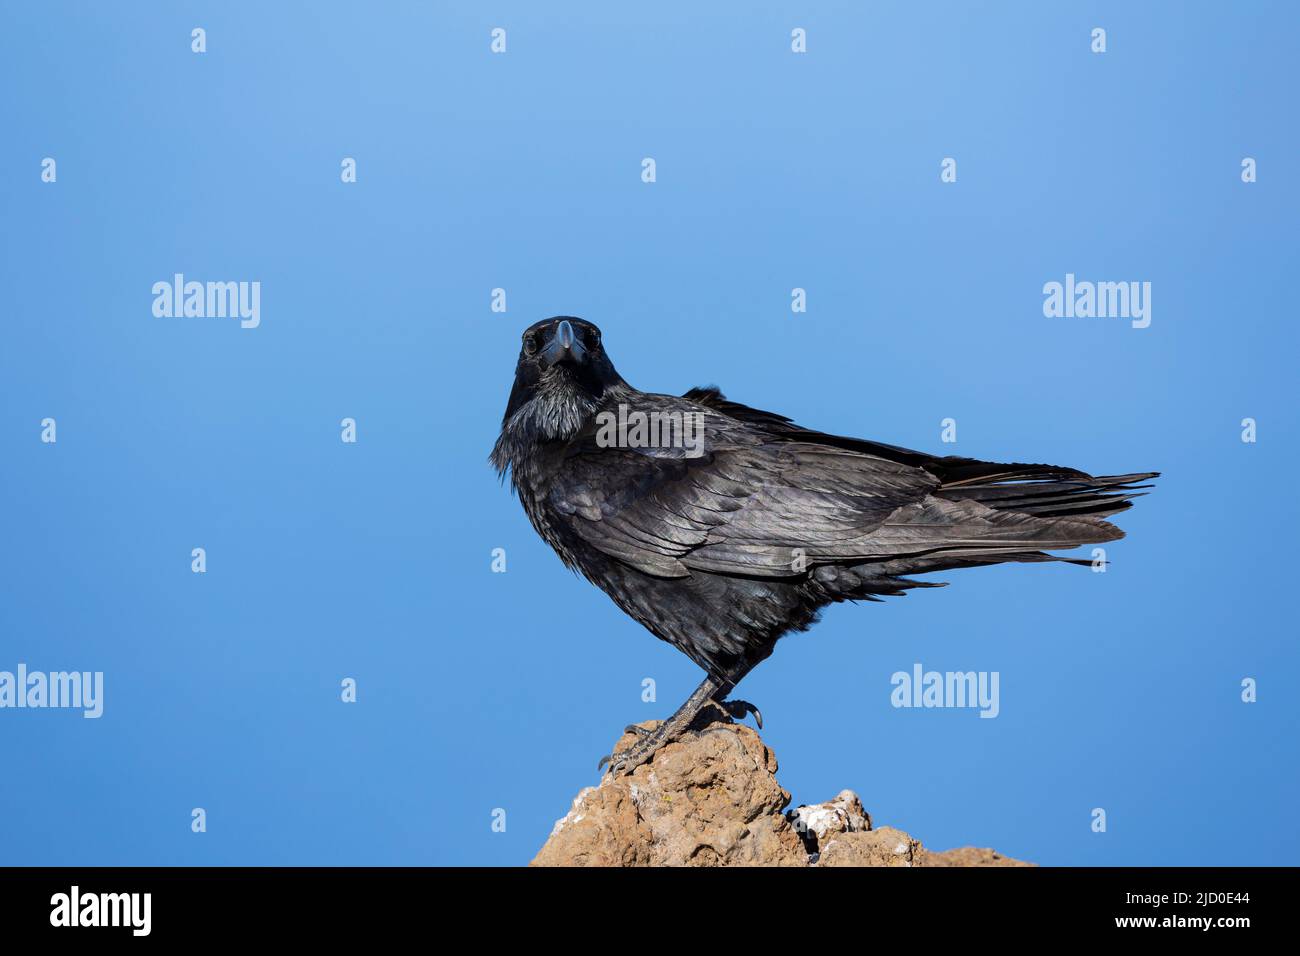 Ritratto di nero corvo comune su una roccia, con lo sfondo di un cielo blu, fotografato sull'isola di la Palma, Isole Canarie. Foto Stock